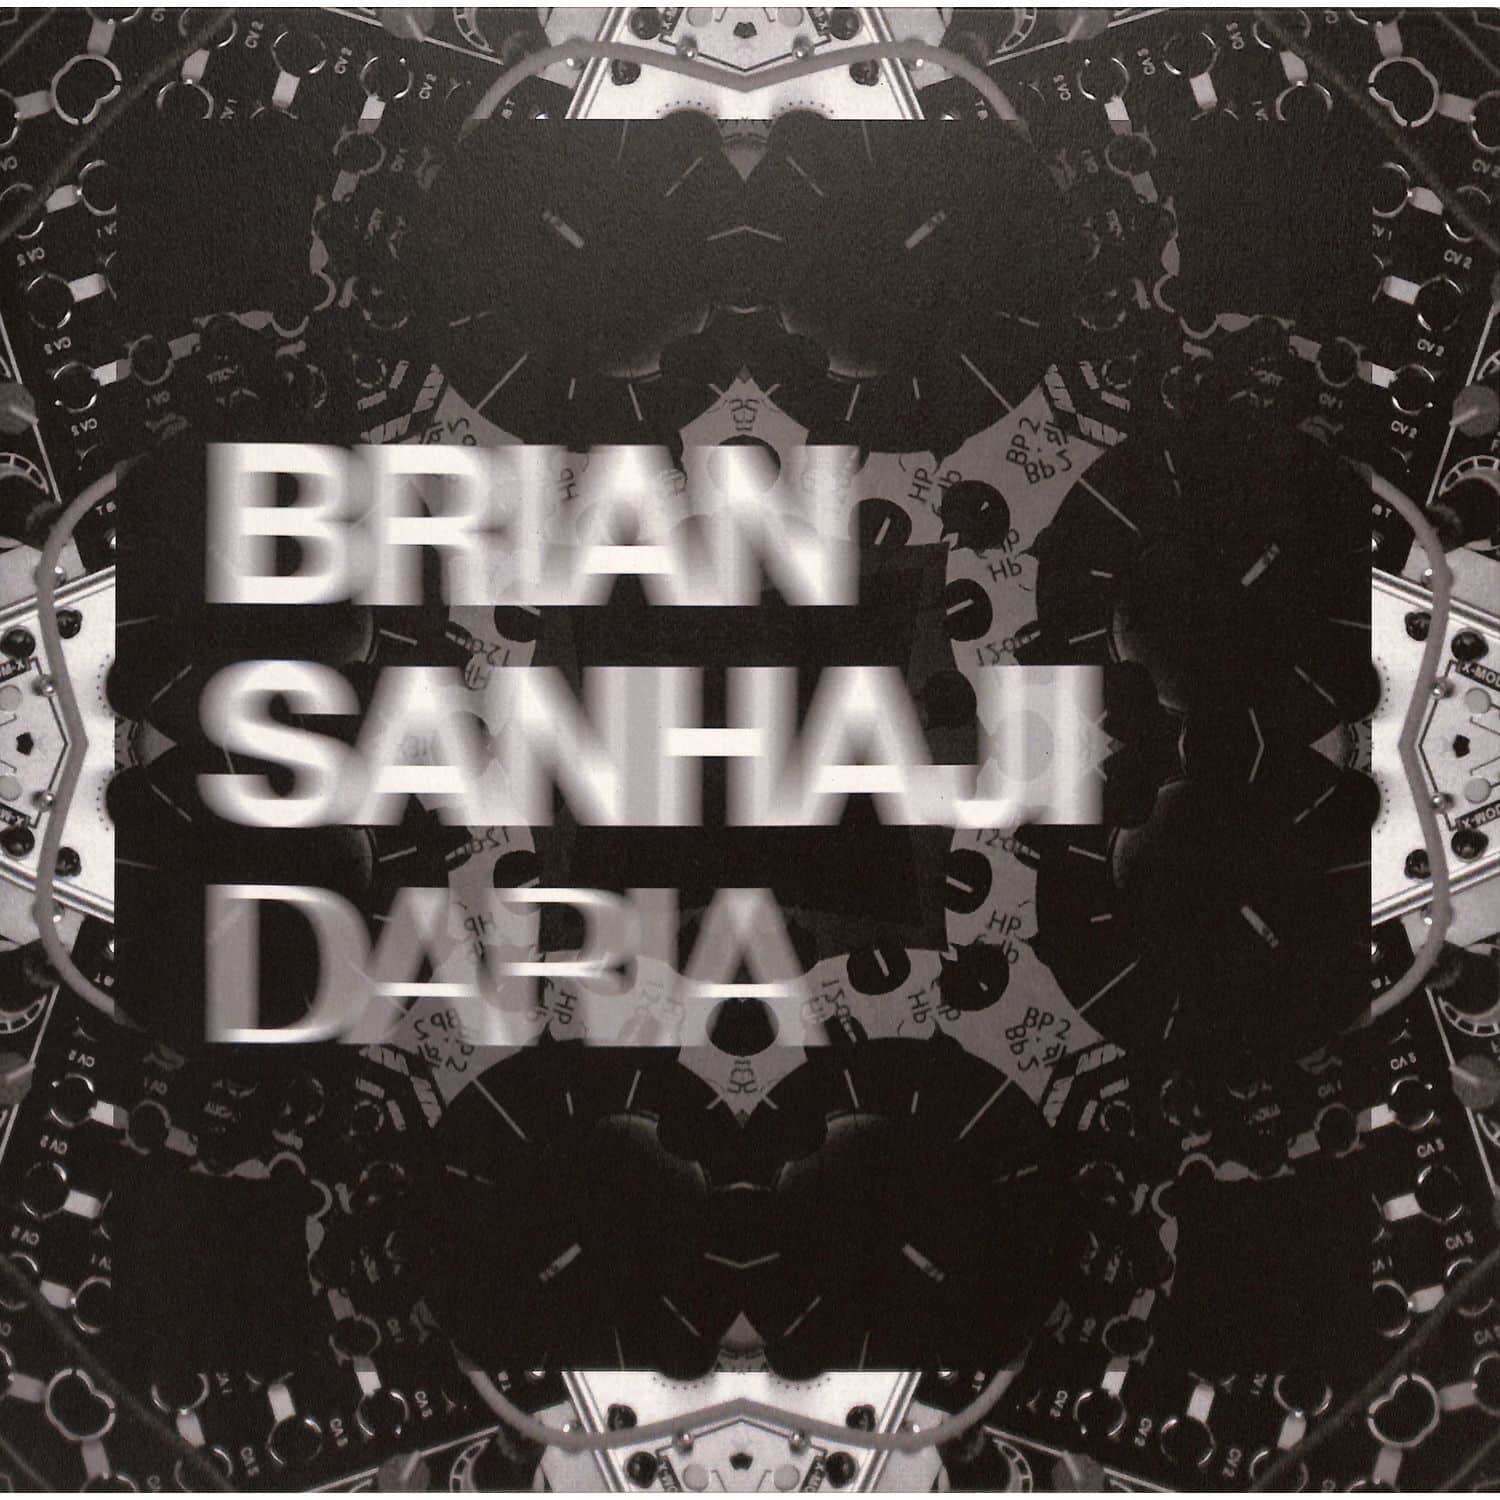 Brian Sanhaji - DARIA EP